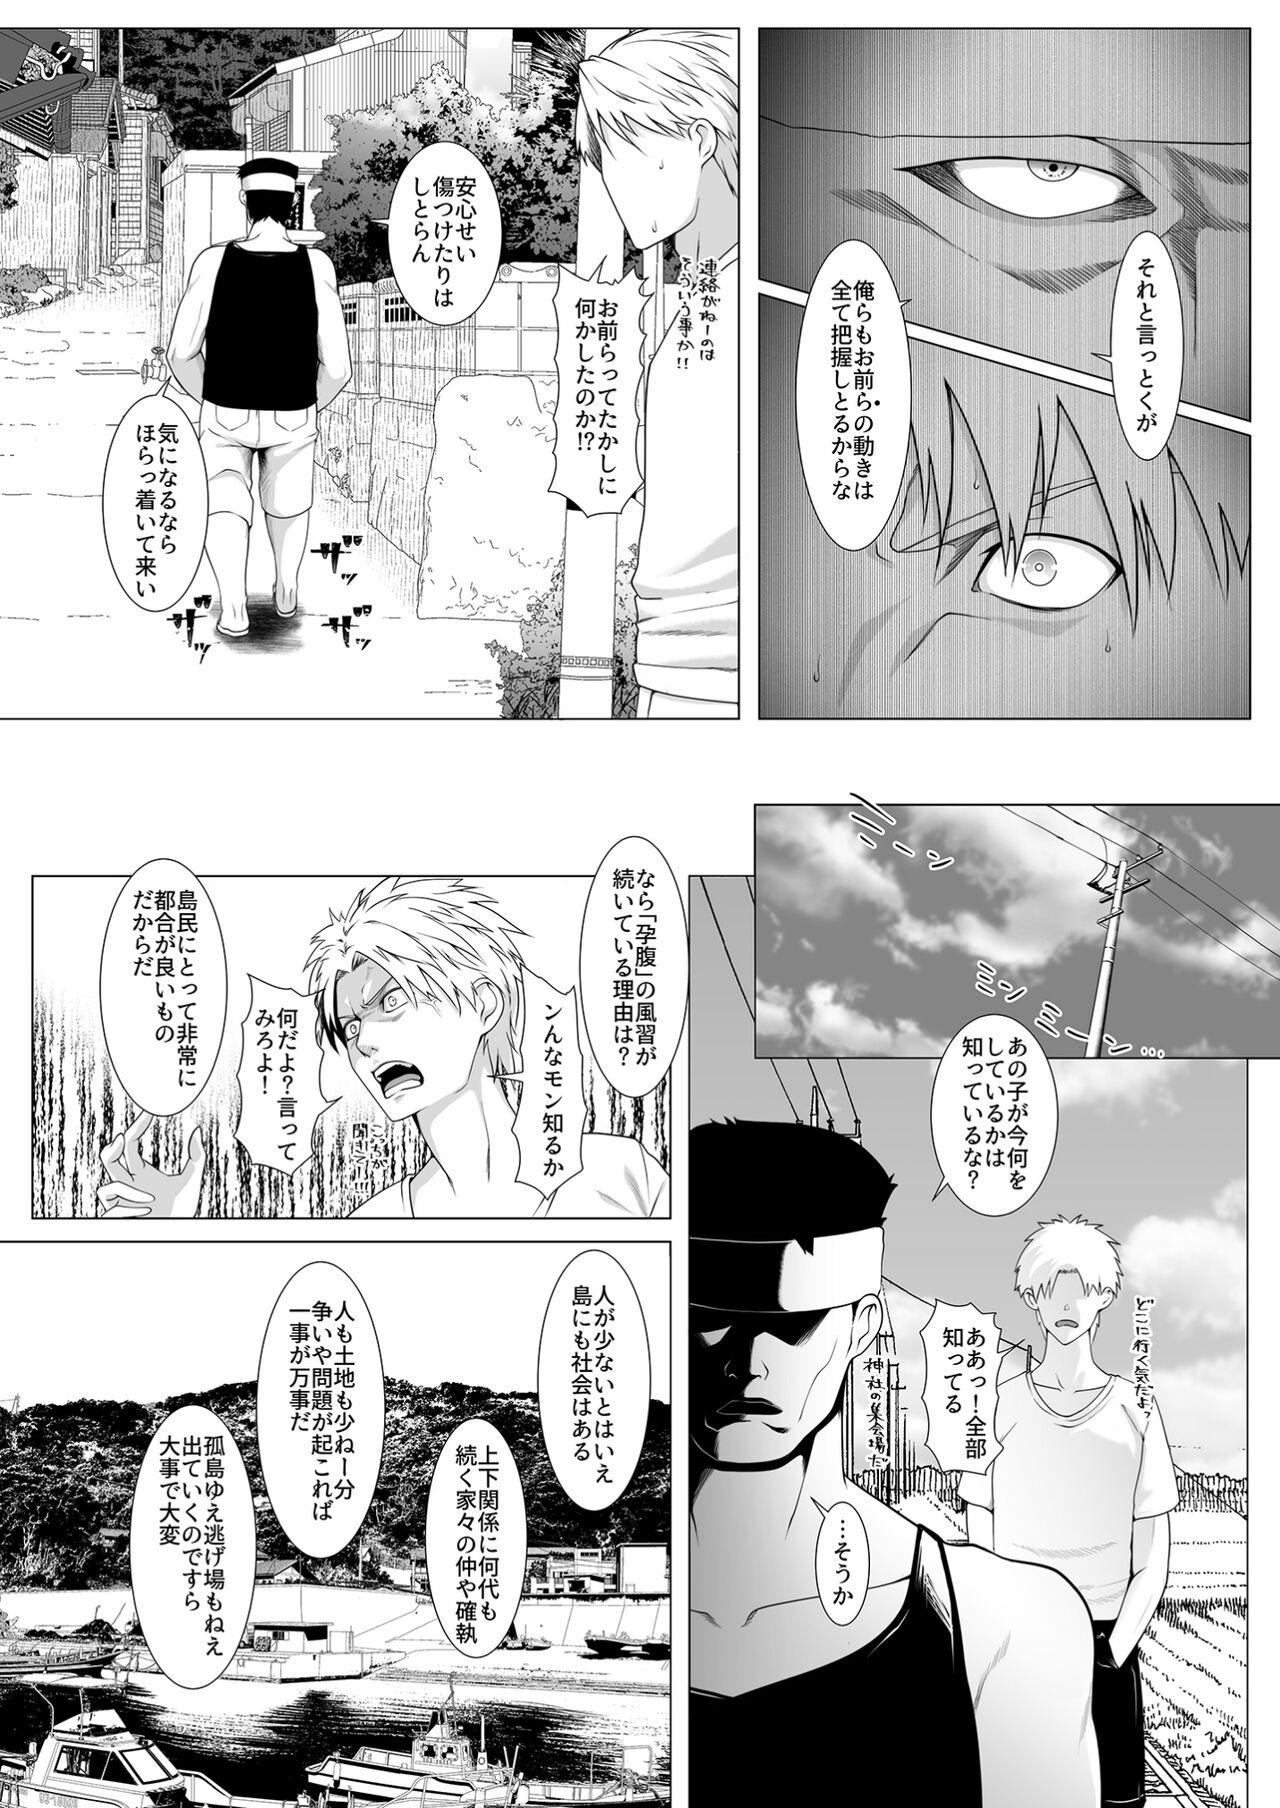 Wank Haramase no Shima 4 - Original Exposed - Page 5